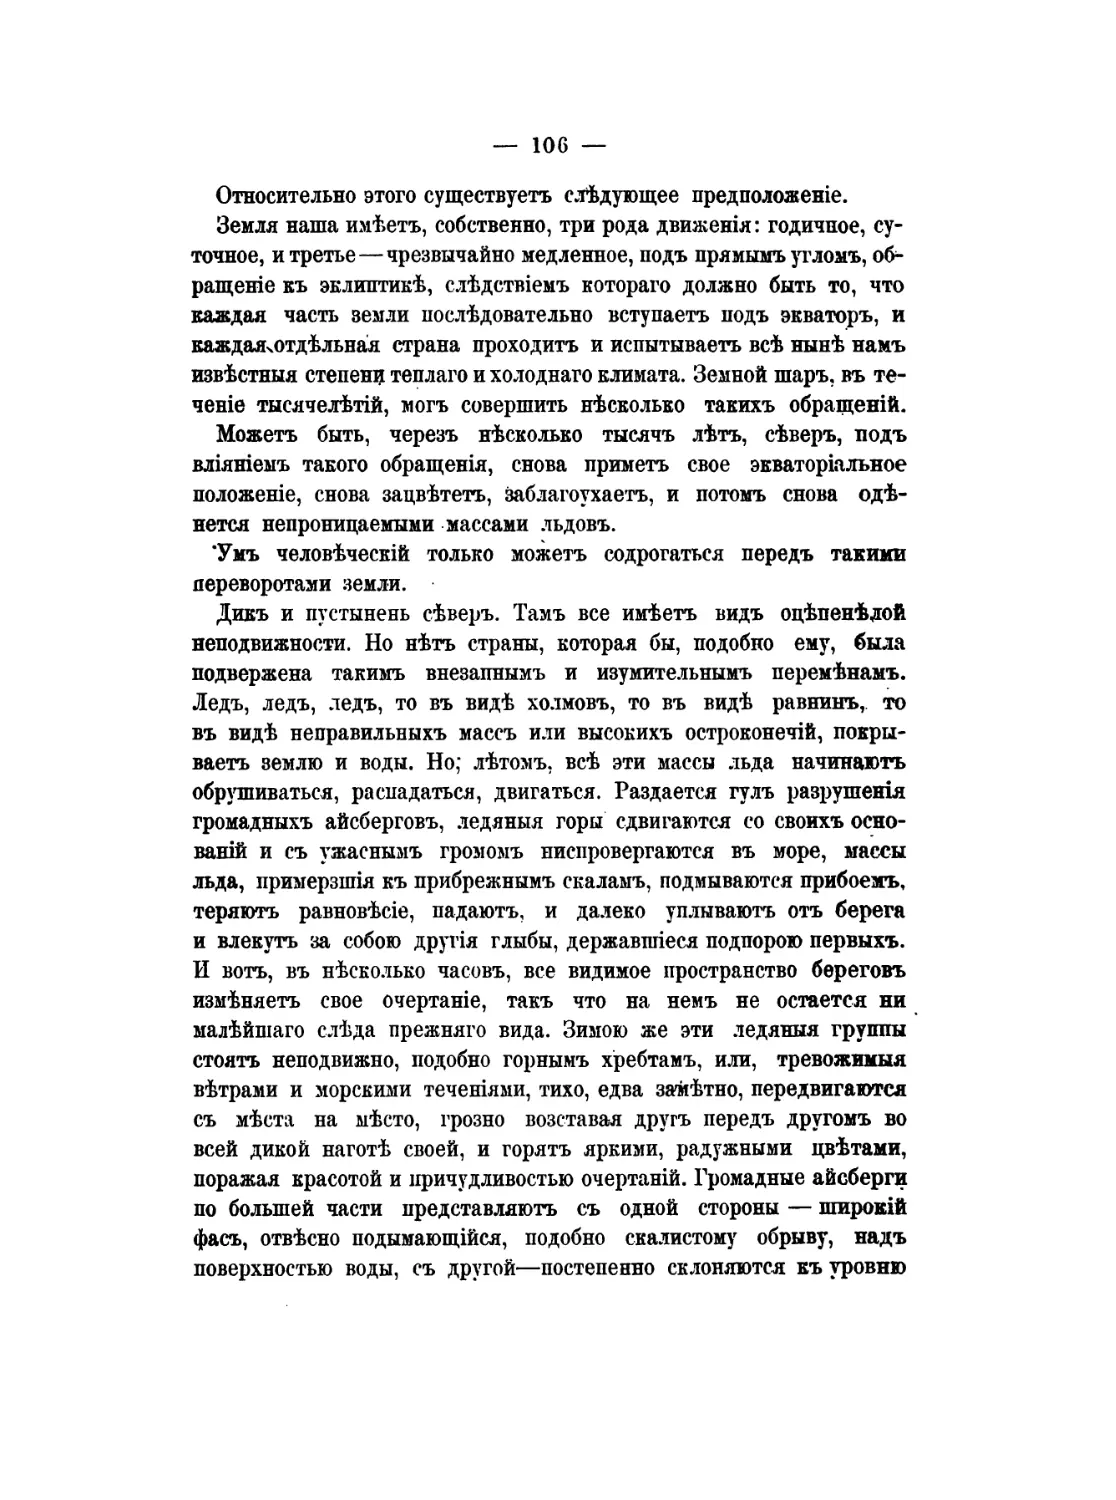 Pages from Кондратьев, И. К. - Гунны. Эпоха великого переселения народов (М., 1878)-2_Page_3